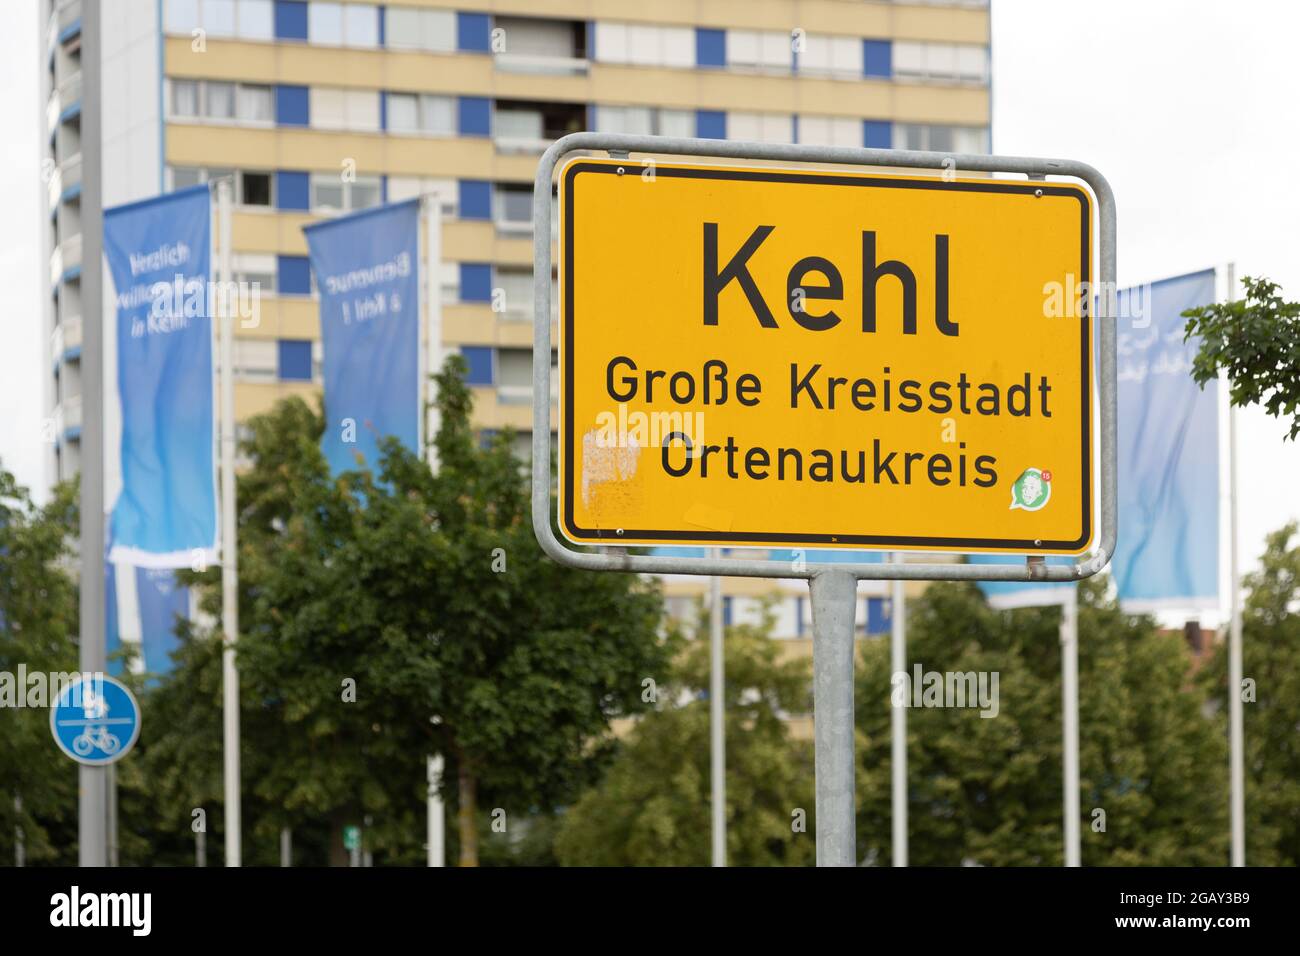 Place-name sign Kehl, Grosse Kreisstadt, Ortenaukreis, Baden-Wuerttemberg, Germany. Stock Photo